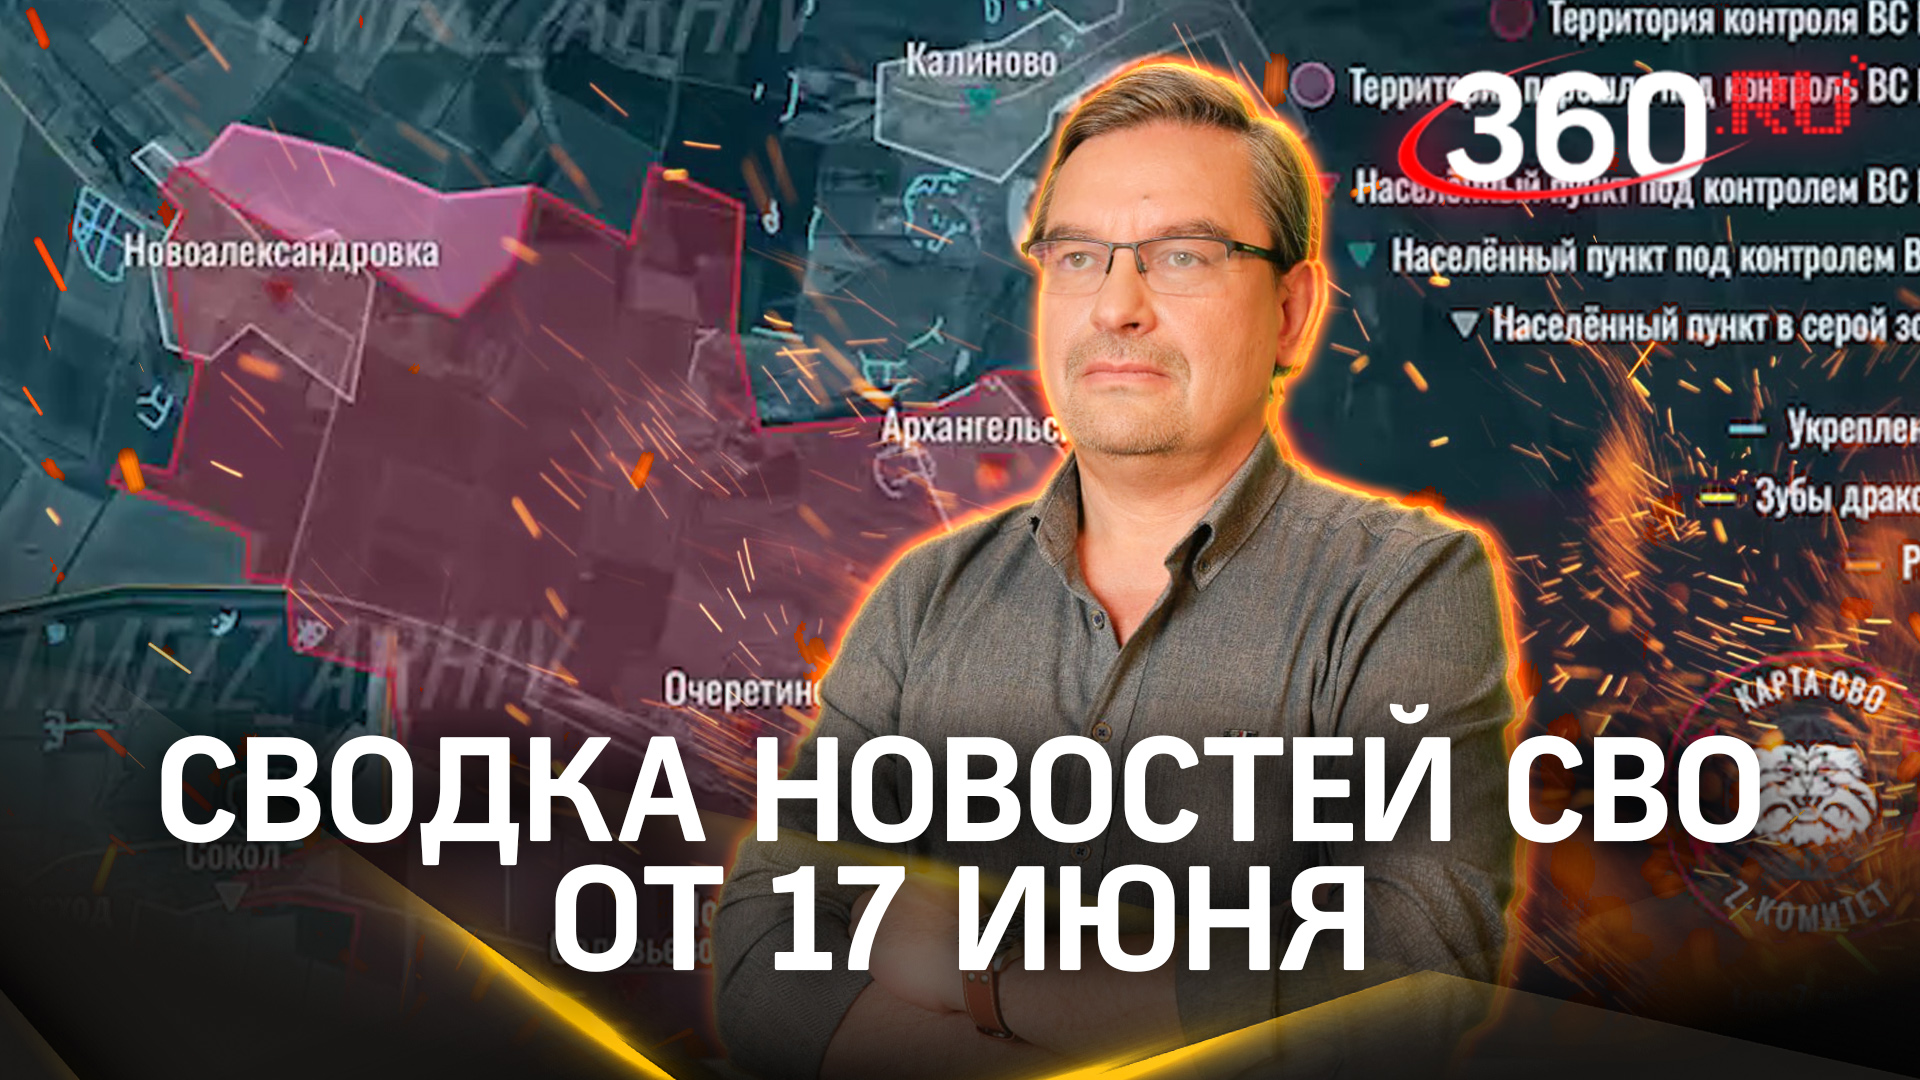 Михаил Онуфриенко: «ВСУ не удалось продвинуться ни на сантиметр». Последняя сводка новостей СВО от 1